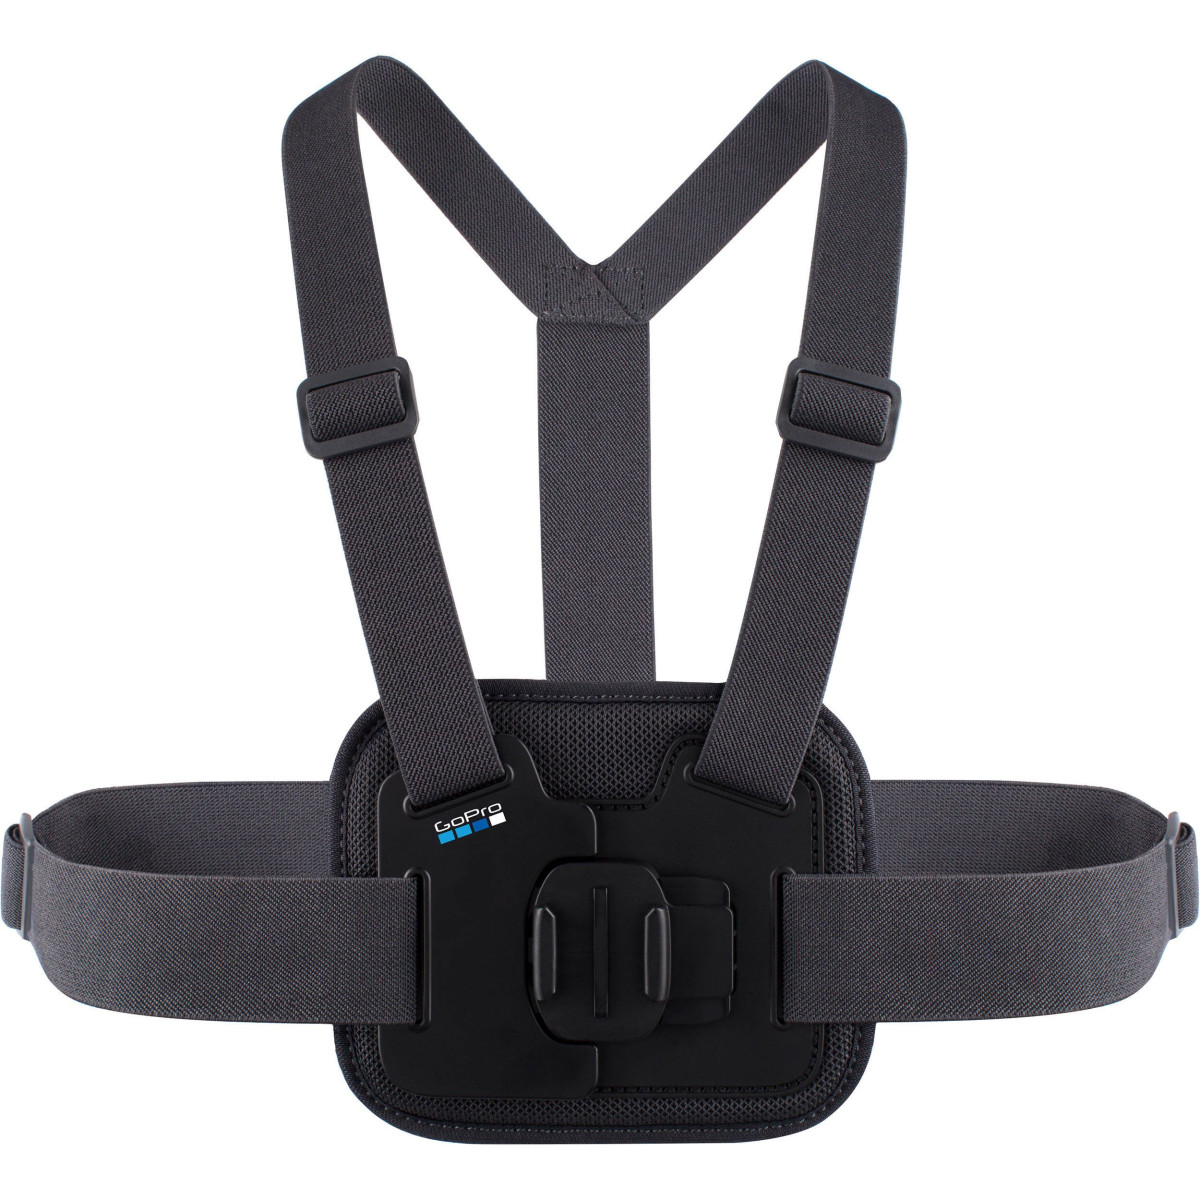 Аксессуар для экшн-камер GoPro Chesty chest harness (AGCHM-001)